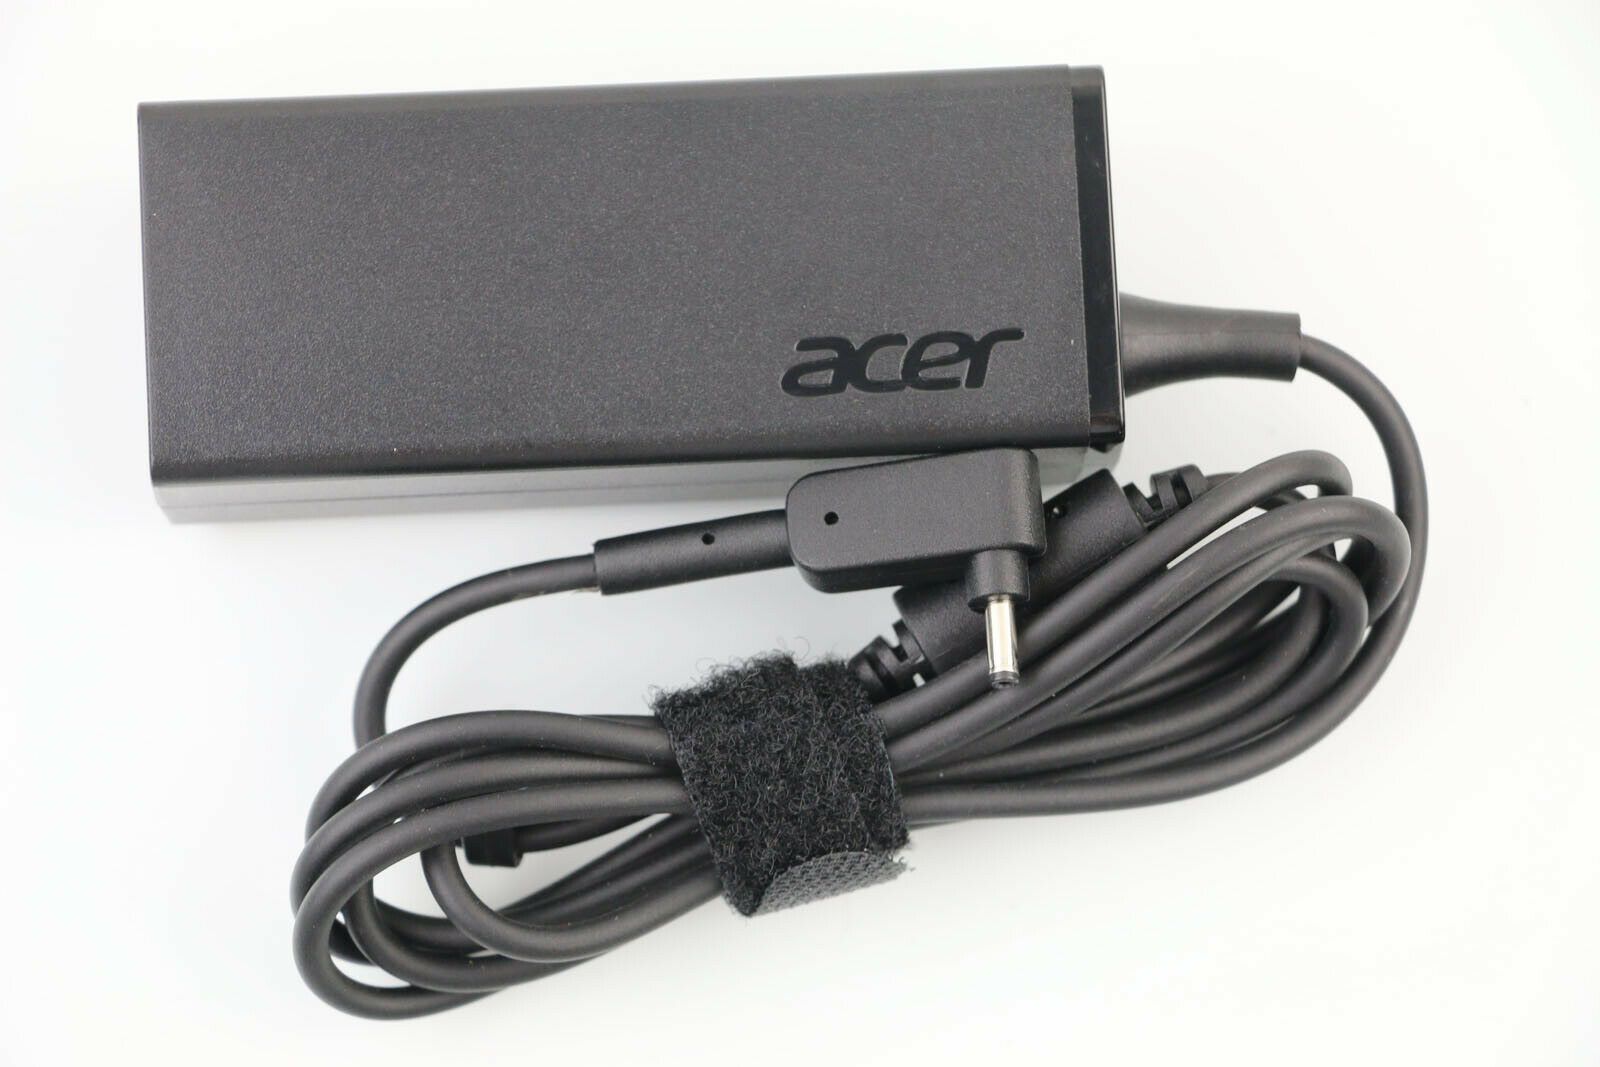 NEW Original Acer ES1-311 ES1-331 ES1-332 ES1-411 AC Adapter Charger 19V 2.37A 45W Charger